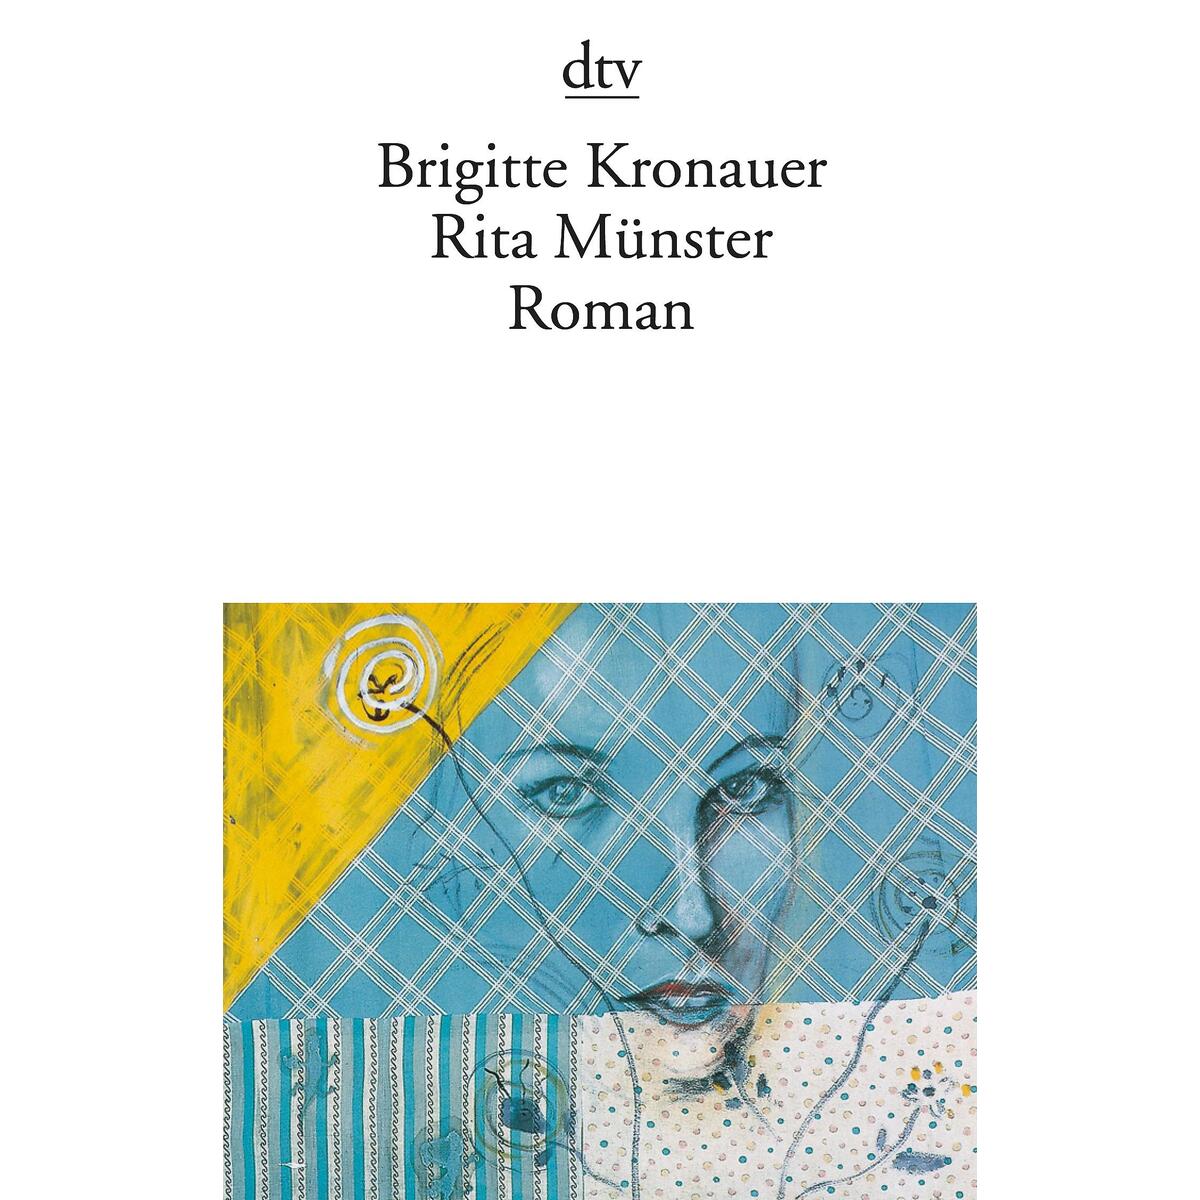 Rita Münster von dtv Verlagsgesellschaft